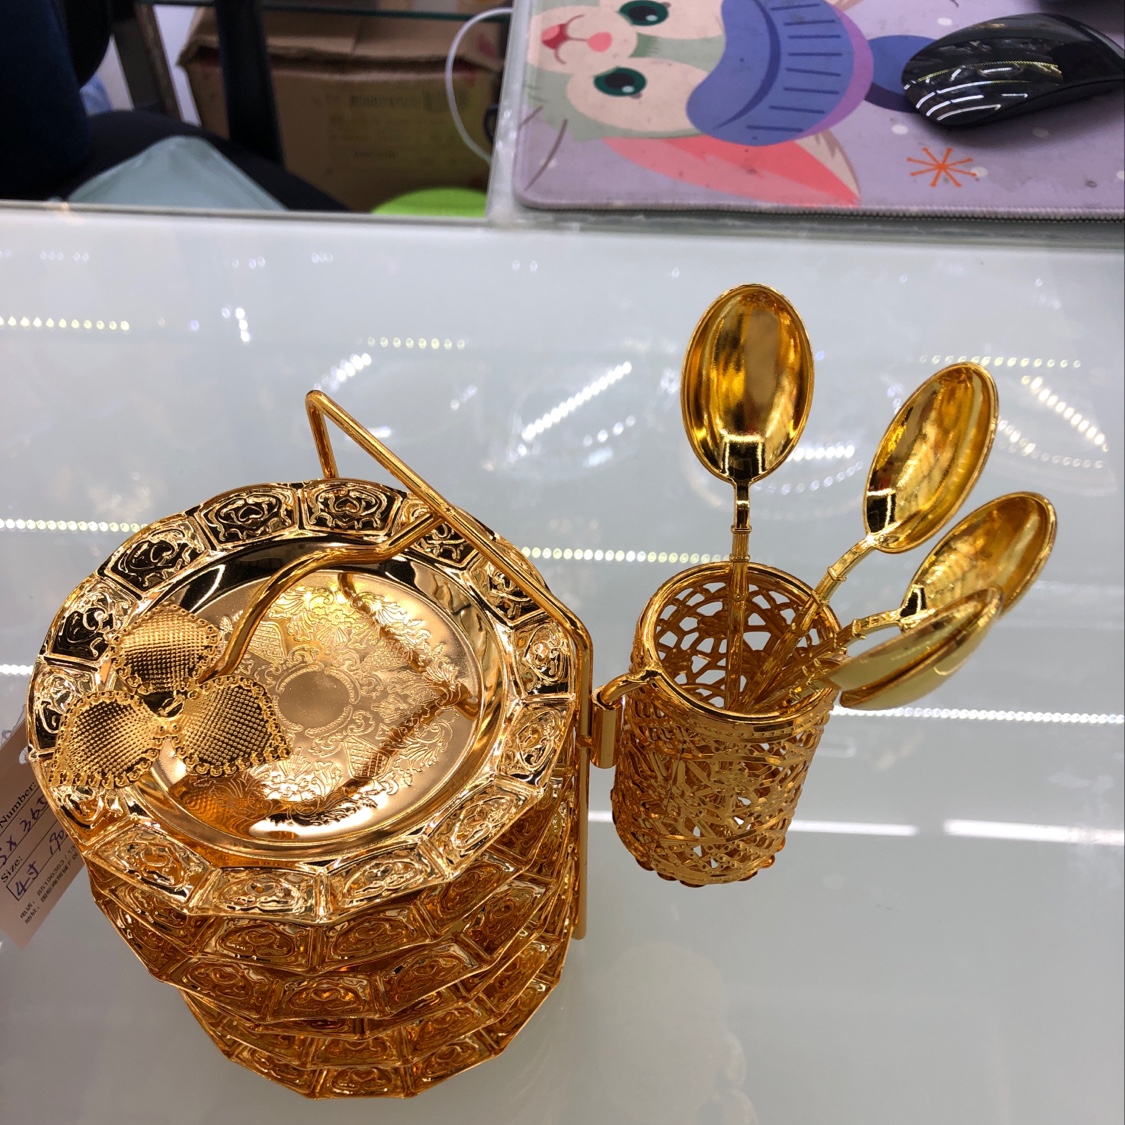 厂家直销批发零售创意金属制品陶瓷亚克力糖果盒甜品摆件装饰品摆件